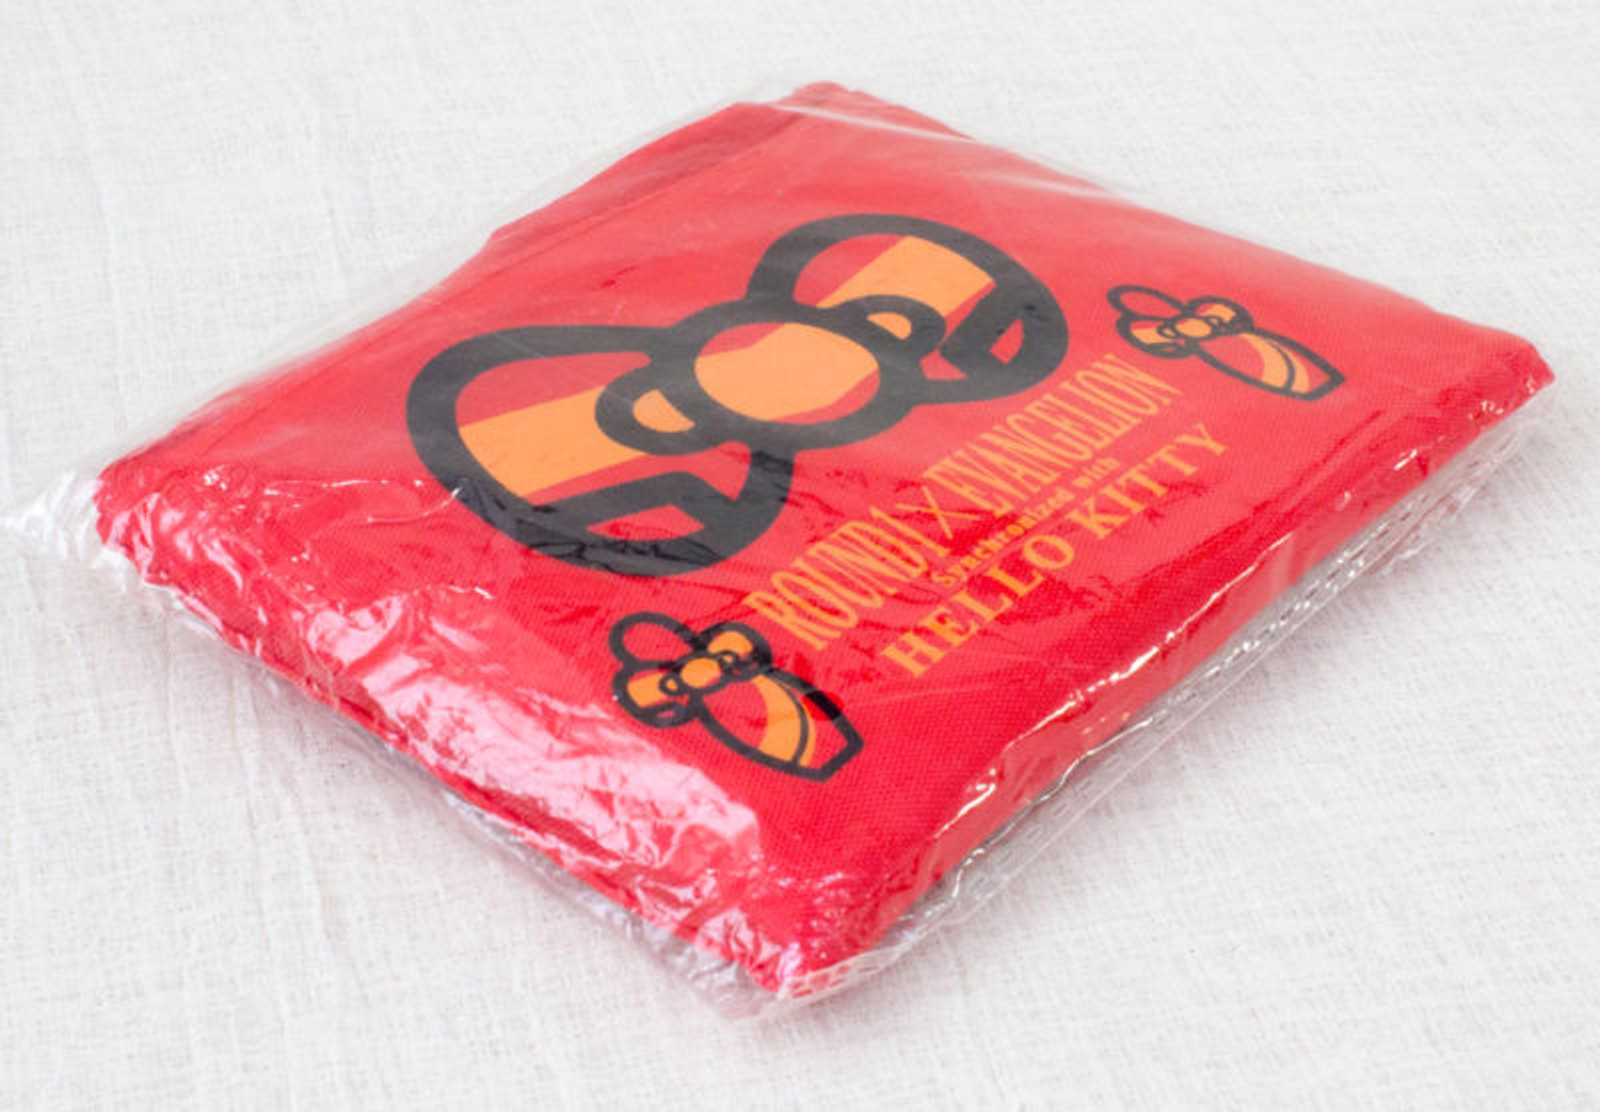 Evangelion x Hello Kitty Tote Bag Asuka Langley Ver. Sanrio JAPAN ANIME MANGA